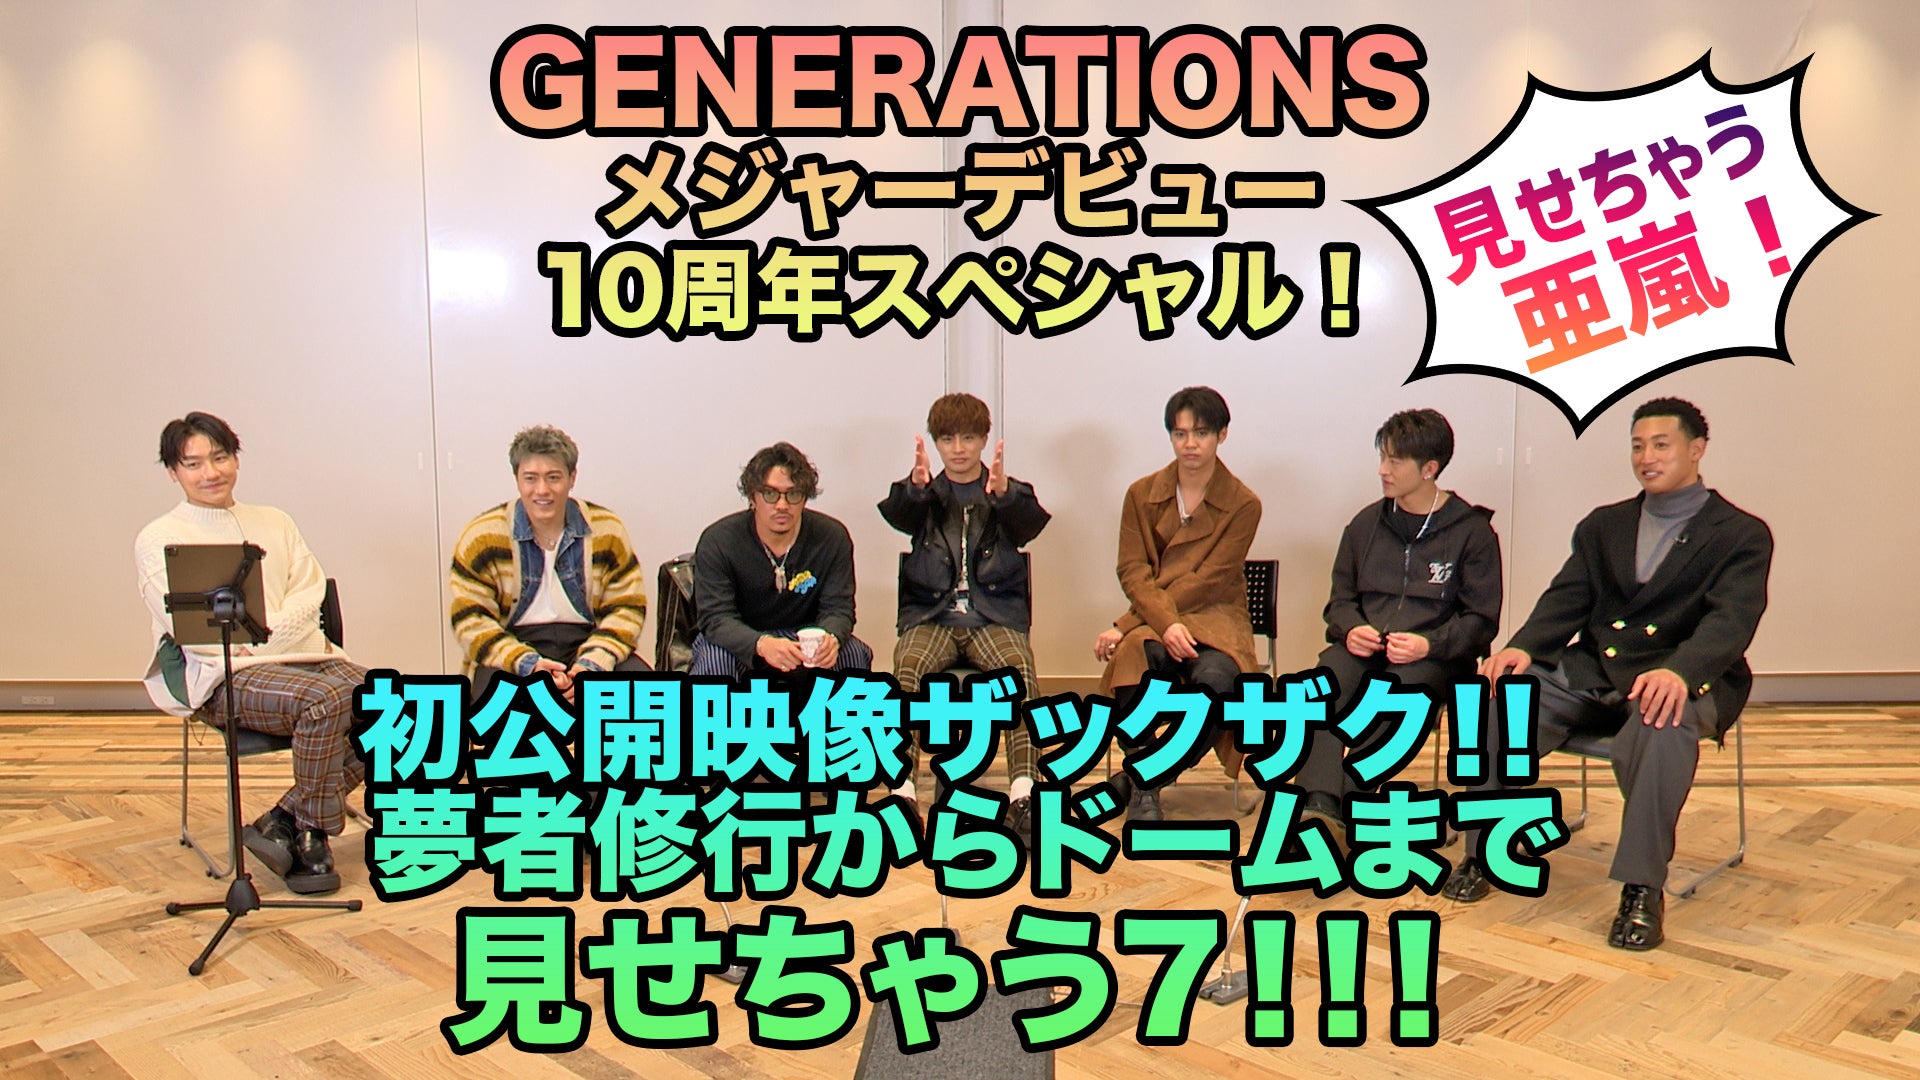 GENERATIONS 10周年スペシャル企画!!見せちゃう７ 亜嵐編 2022/12/24(土)GENERATIONS